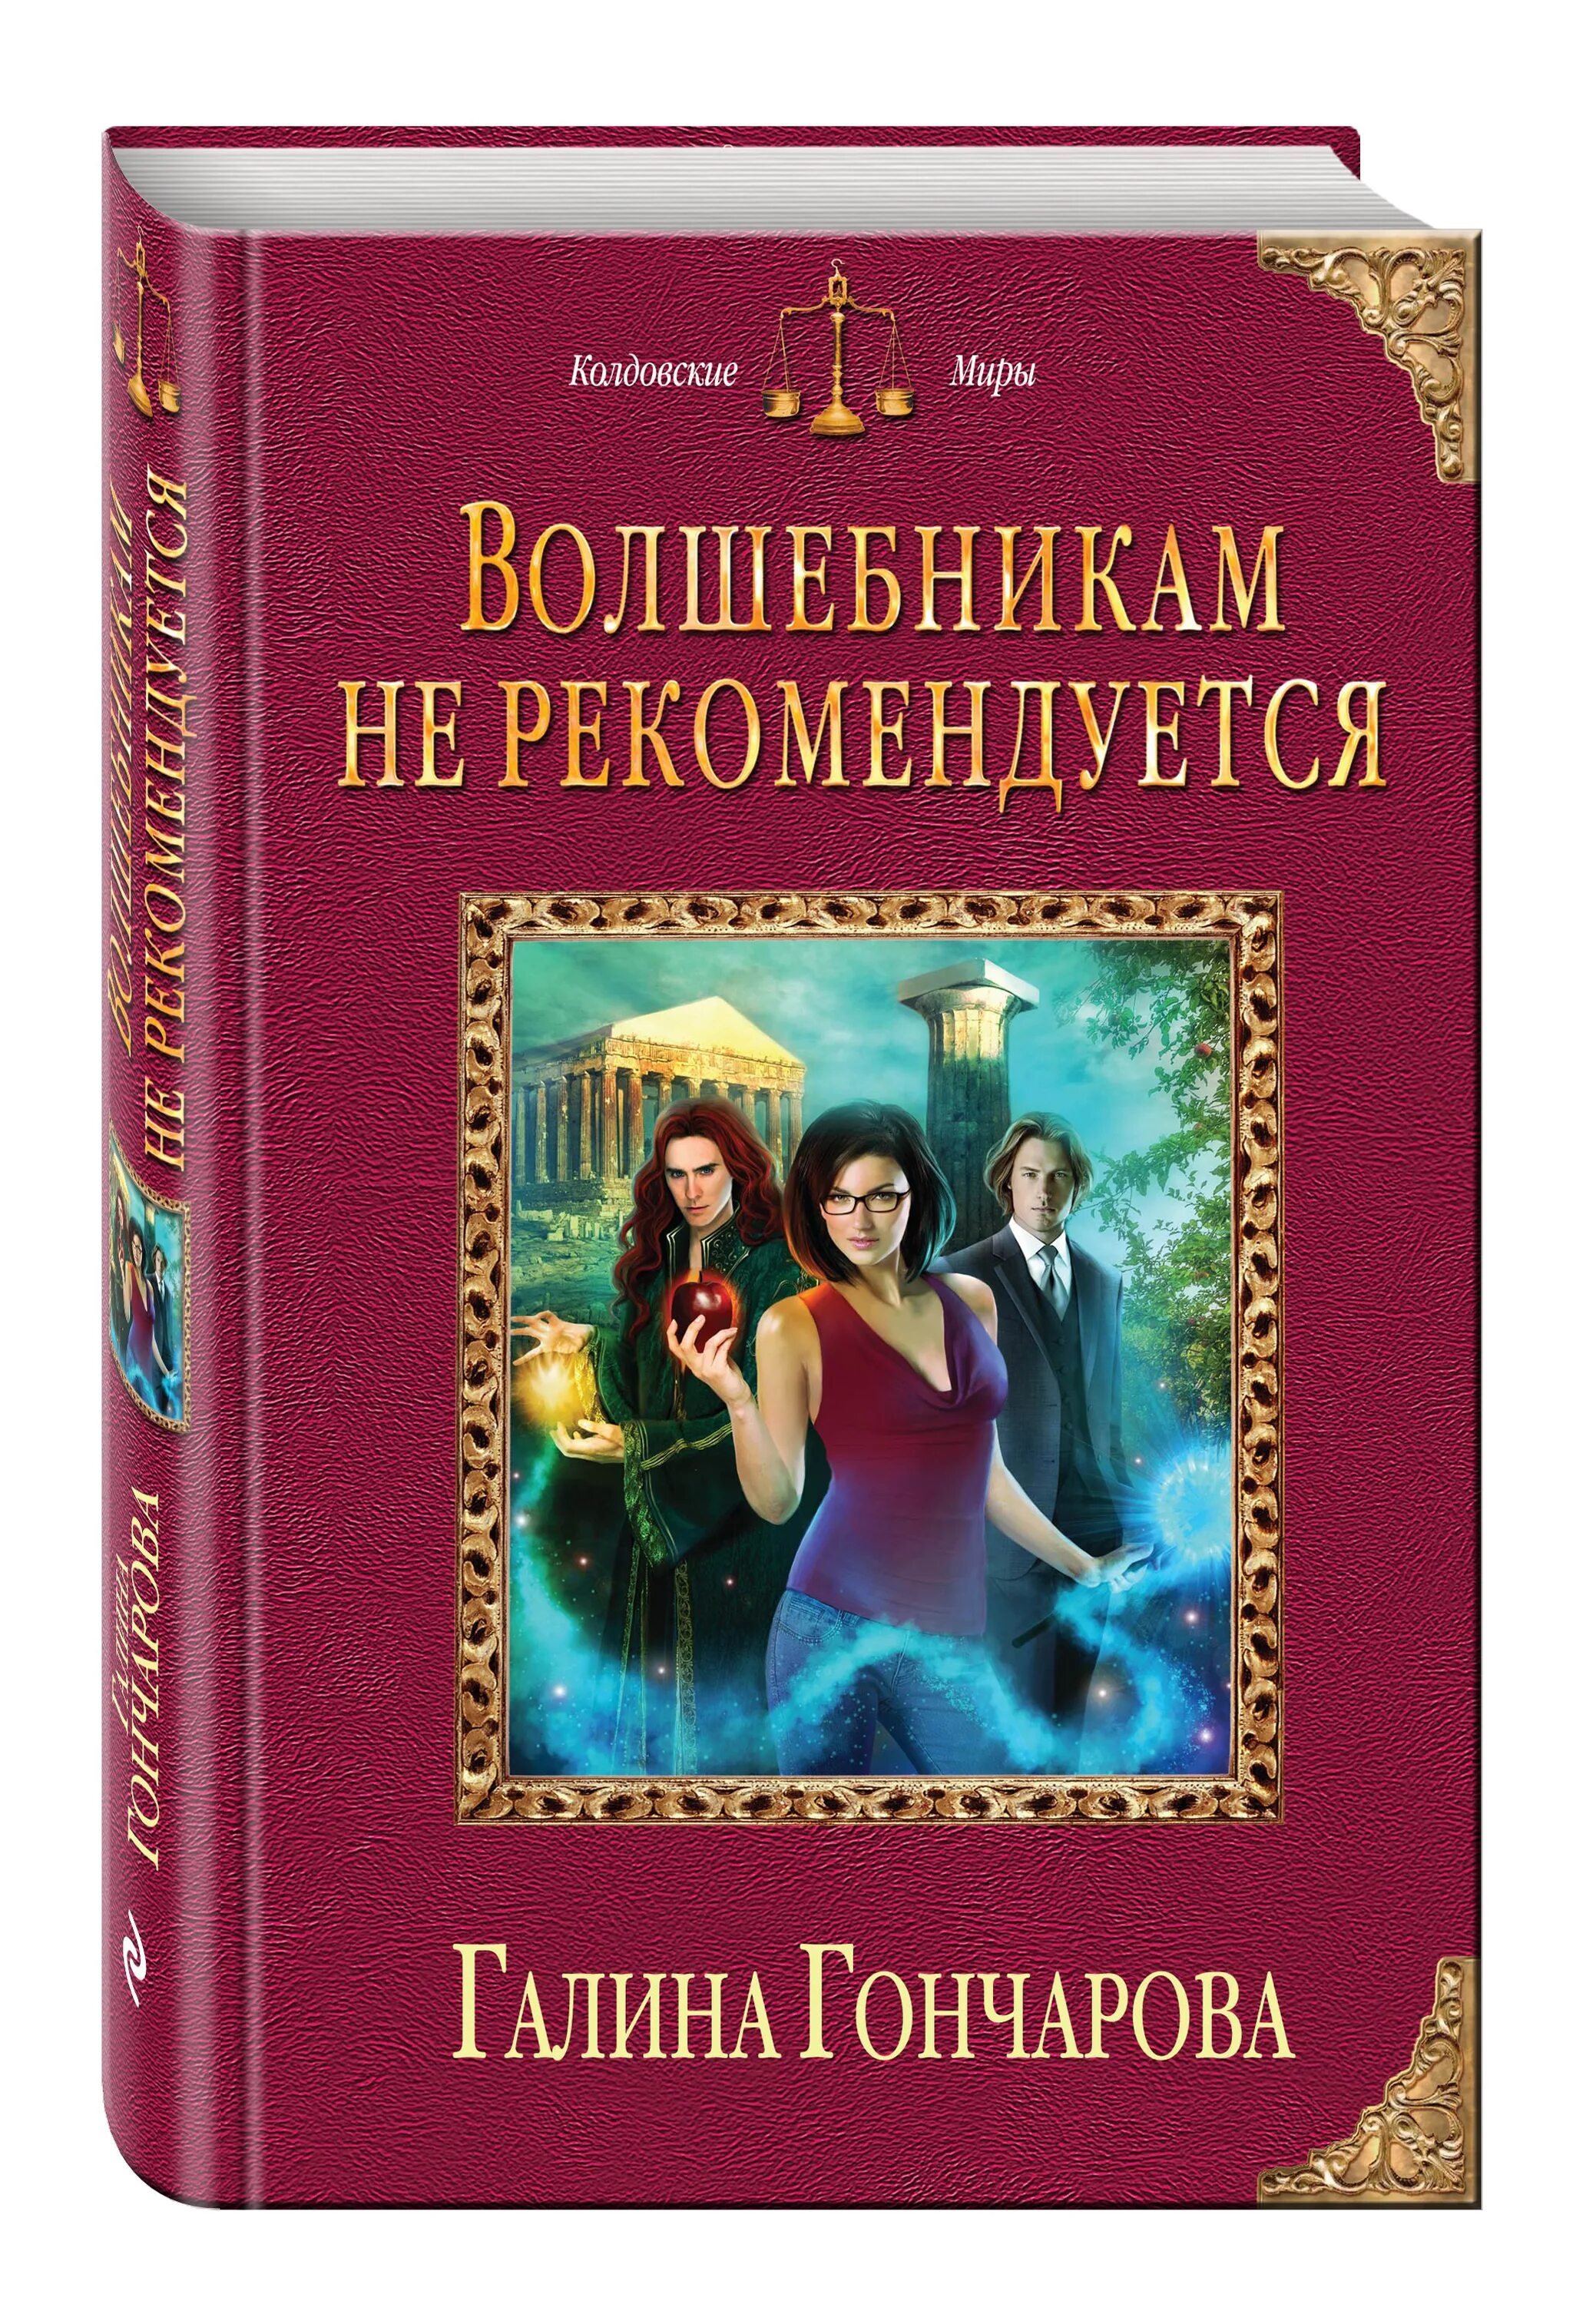 Книги гончаровой галины дмитриевны. Колдовские миры книги. Книги Гончарова.